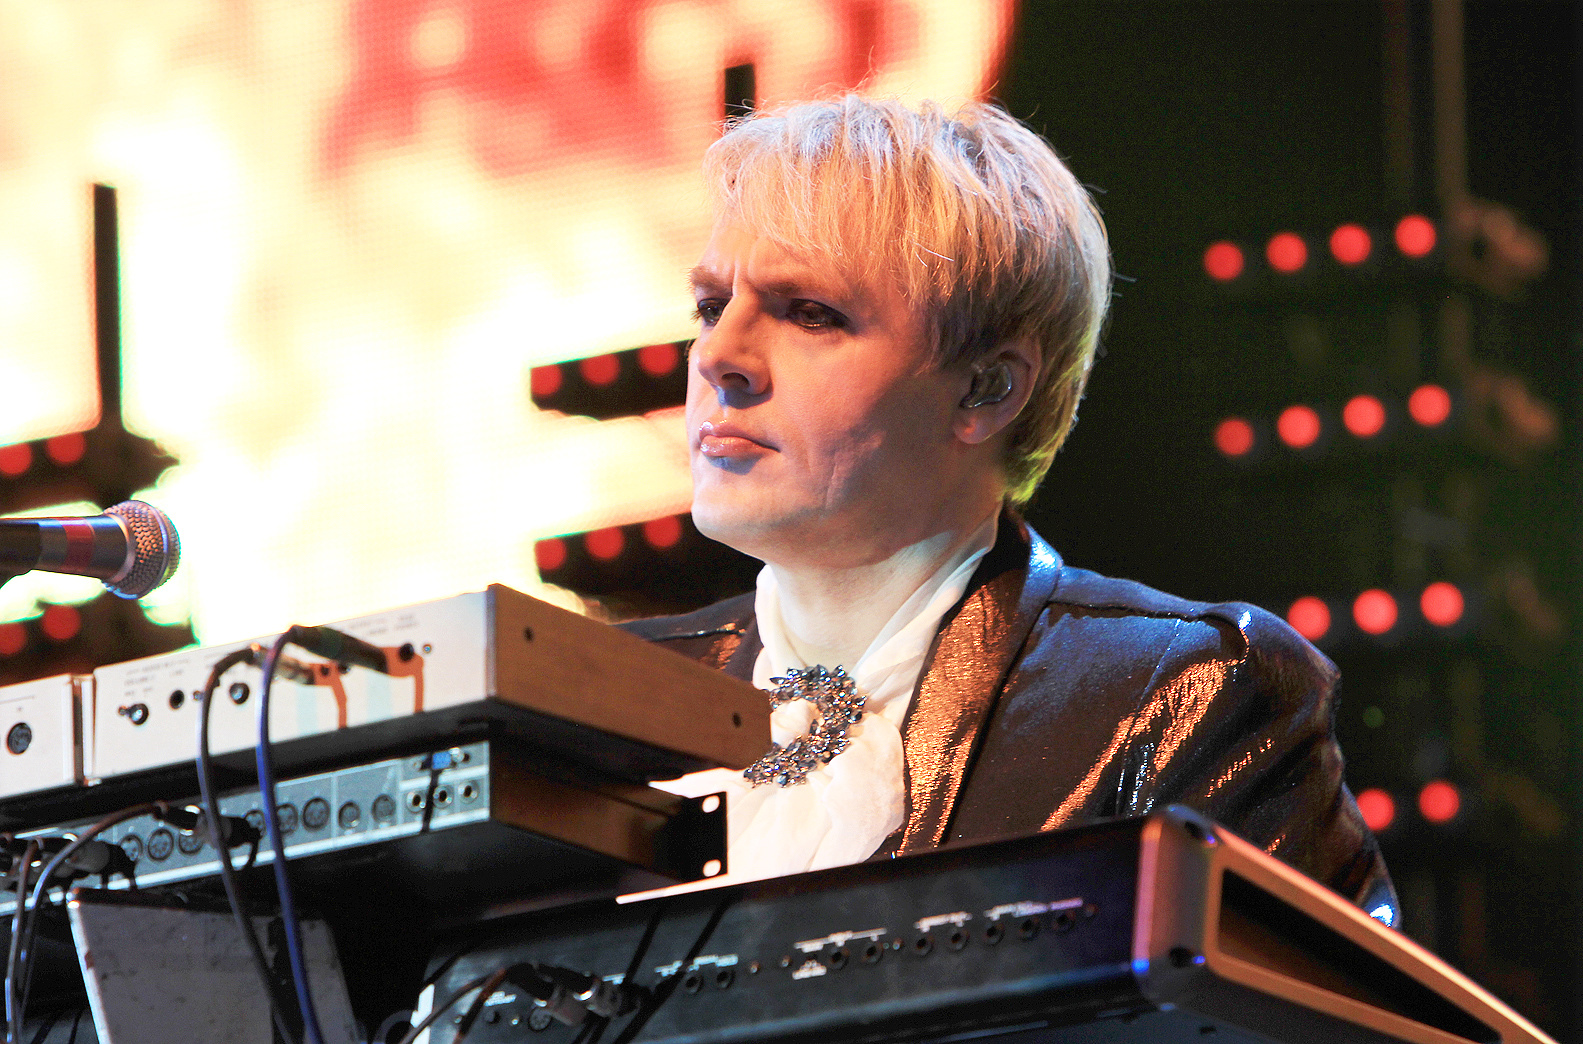 Duran Duran image 6 keyboard